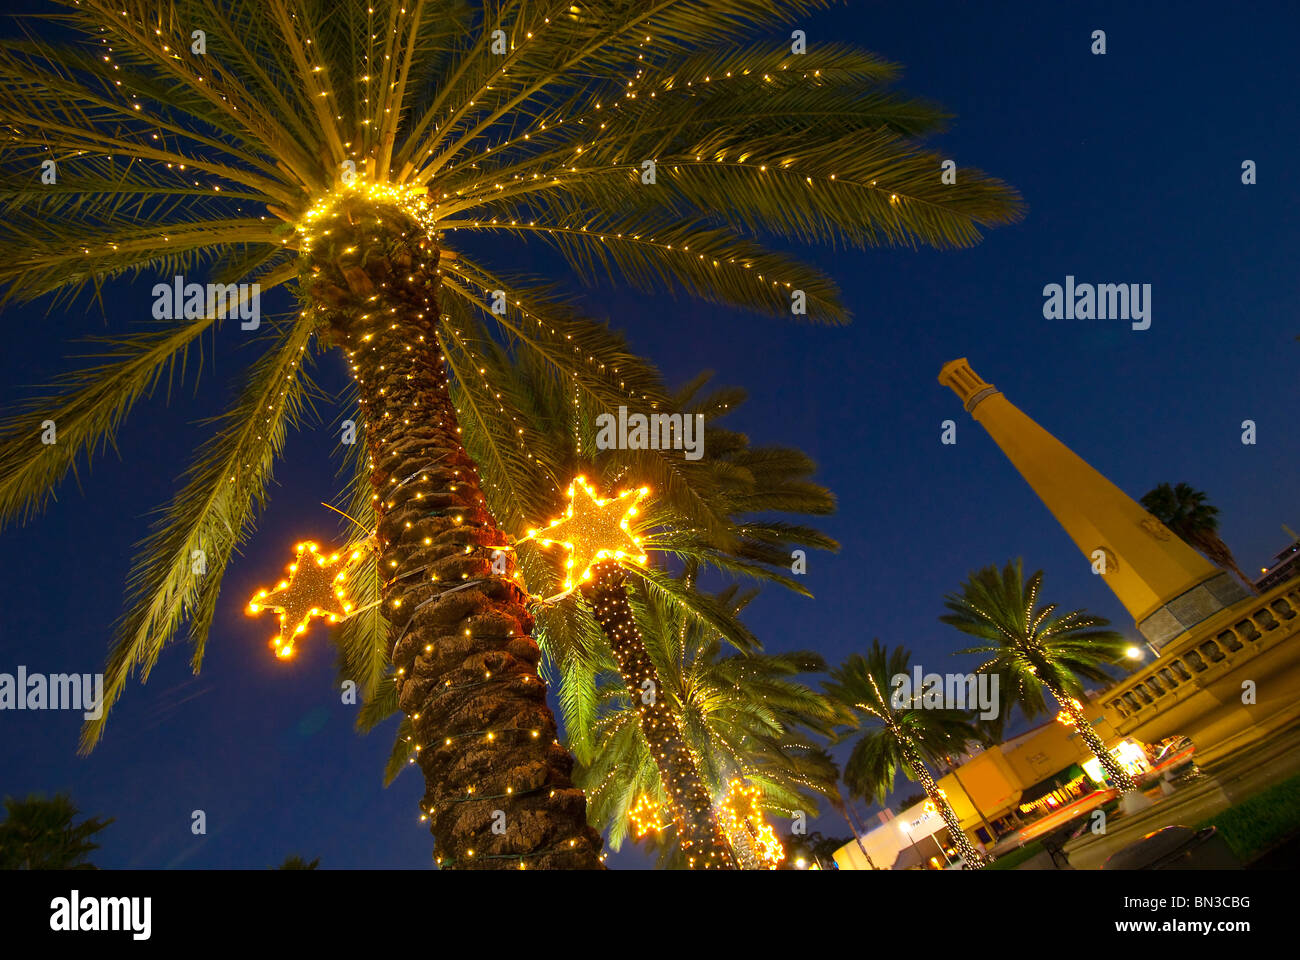 Palmiers décoré de lumières de Noël dans le quartier de l'île de Normandie à Miami Beach, Floride, USA Banque D'Images